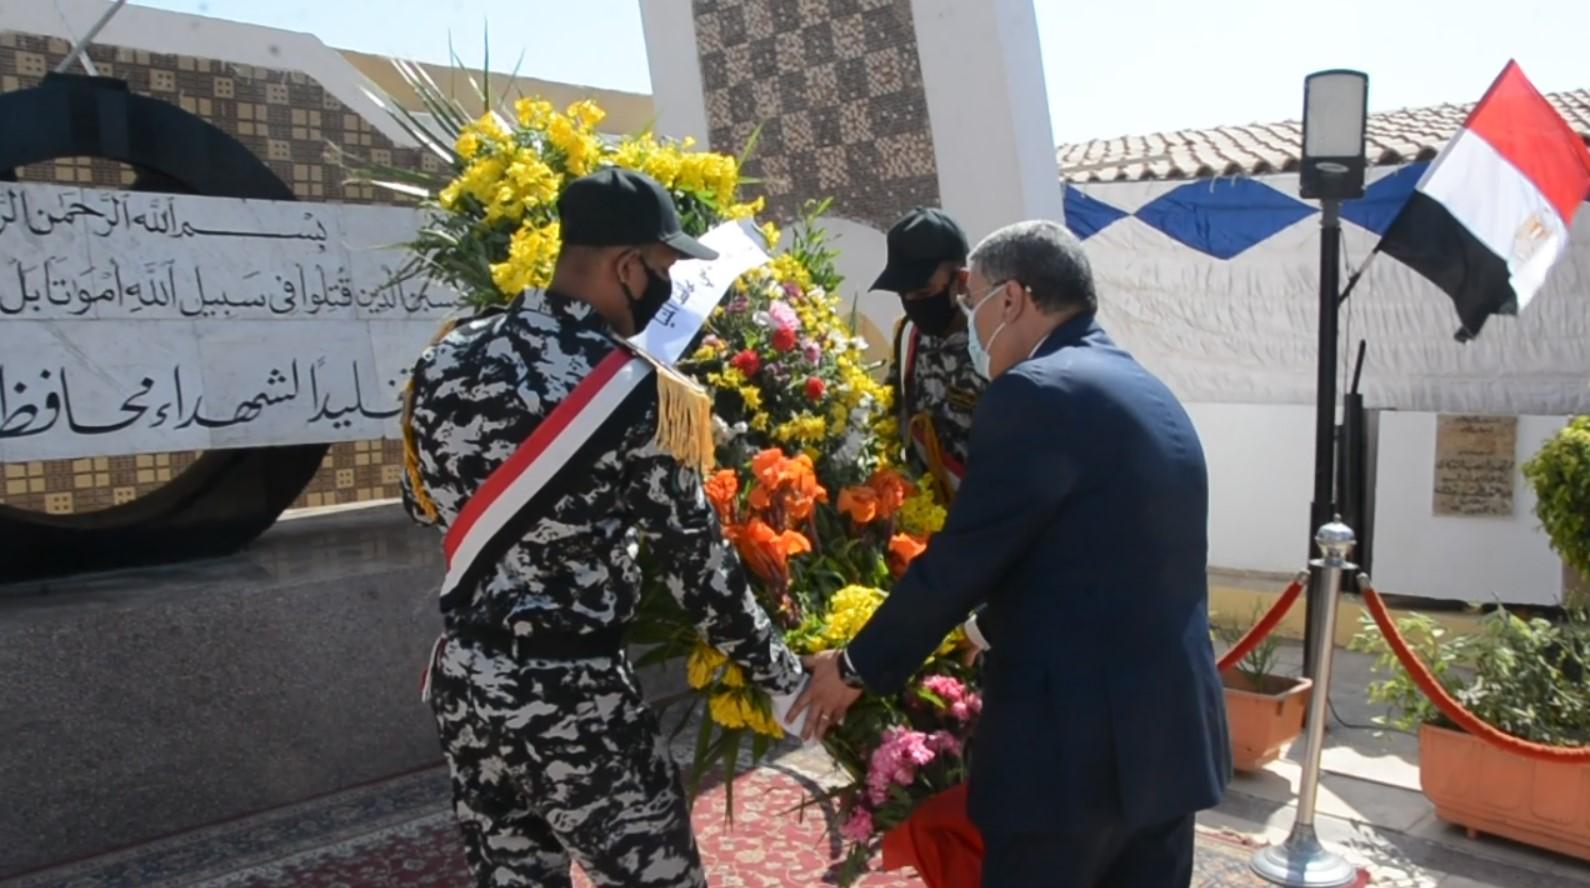   محافظ المنيا يضع إكليلا من الزهور على النصب التذكاري ويقدم التهنئة لرجال القوات المسلحة